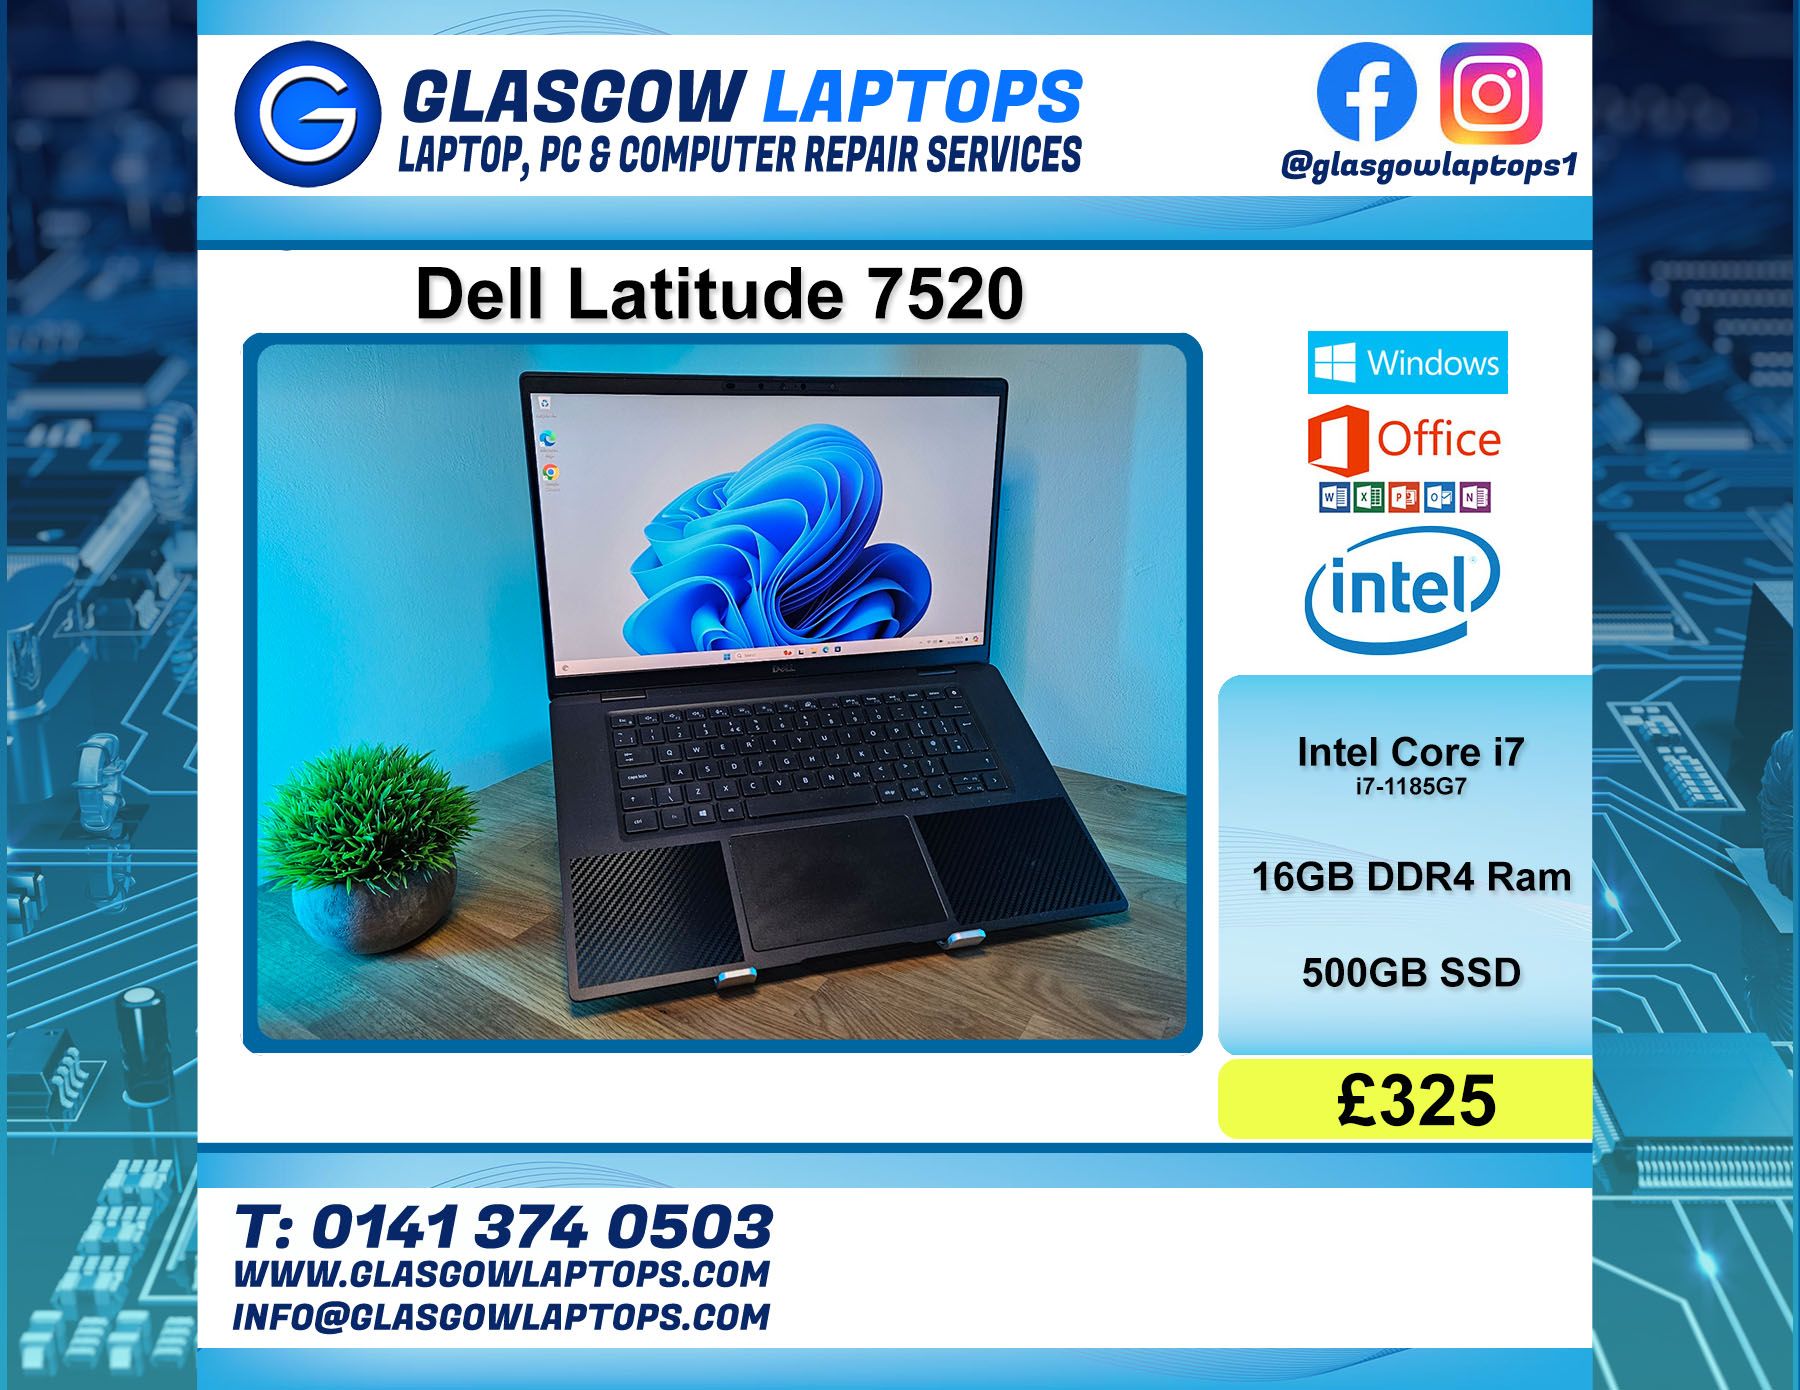 Refurbished Laptop For Sale